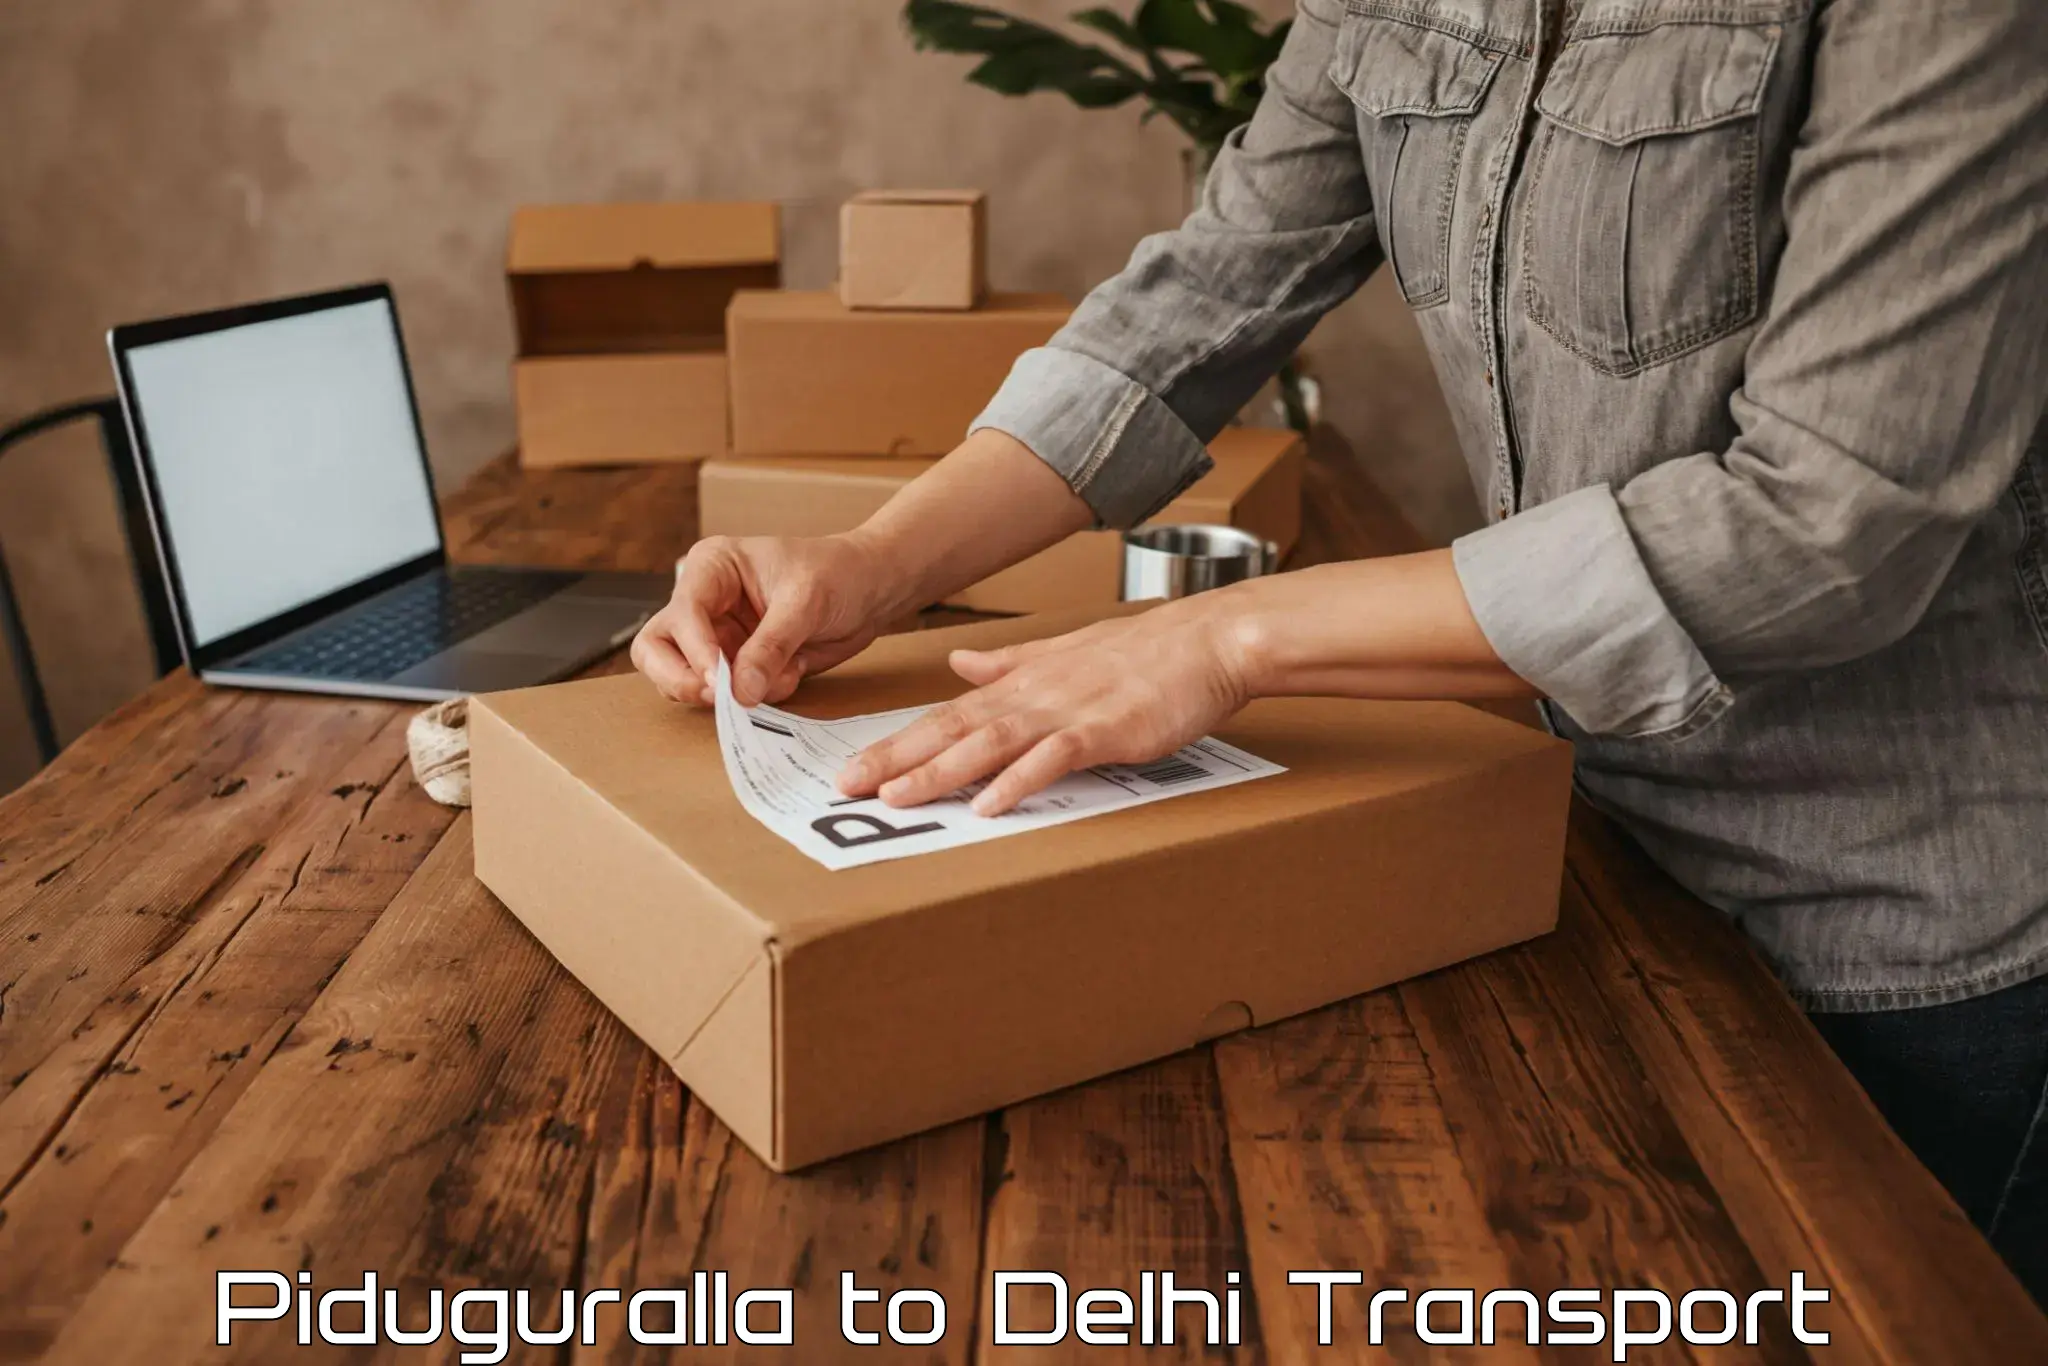 Bike transfer in Piduguralla to Delhi